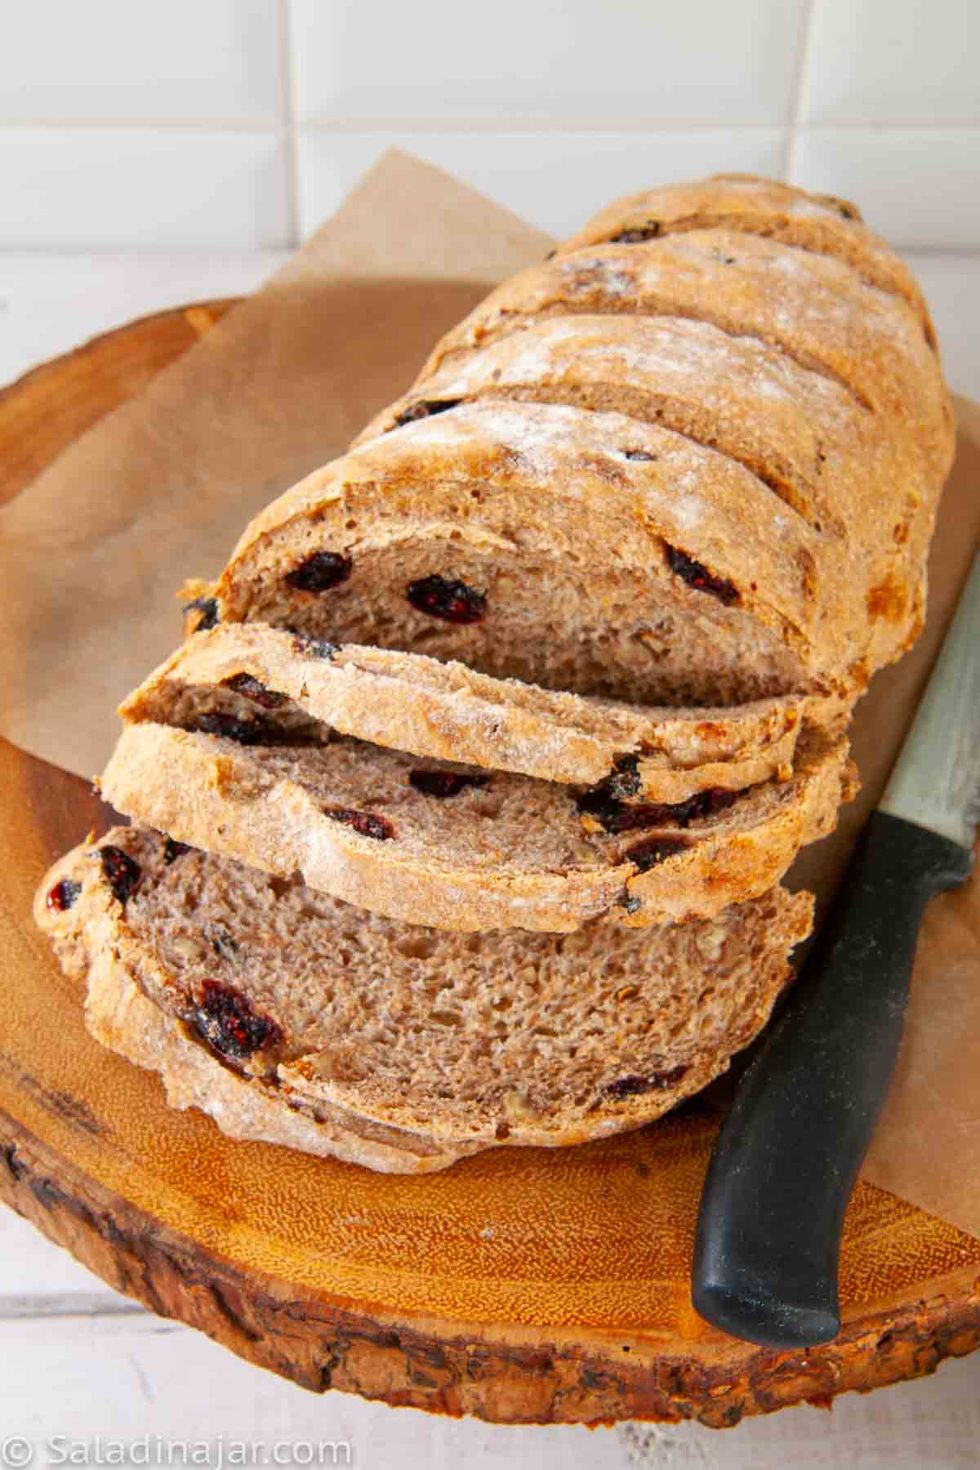 Easy Bread Machine Sourdough Bread Recipe - crave the good